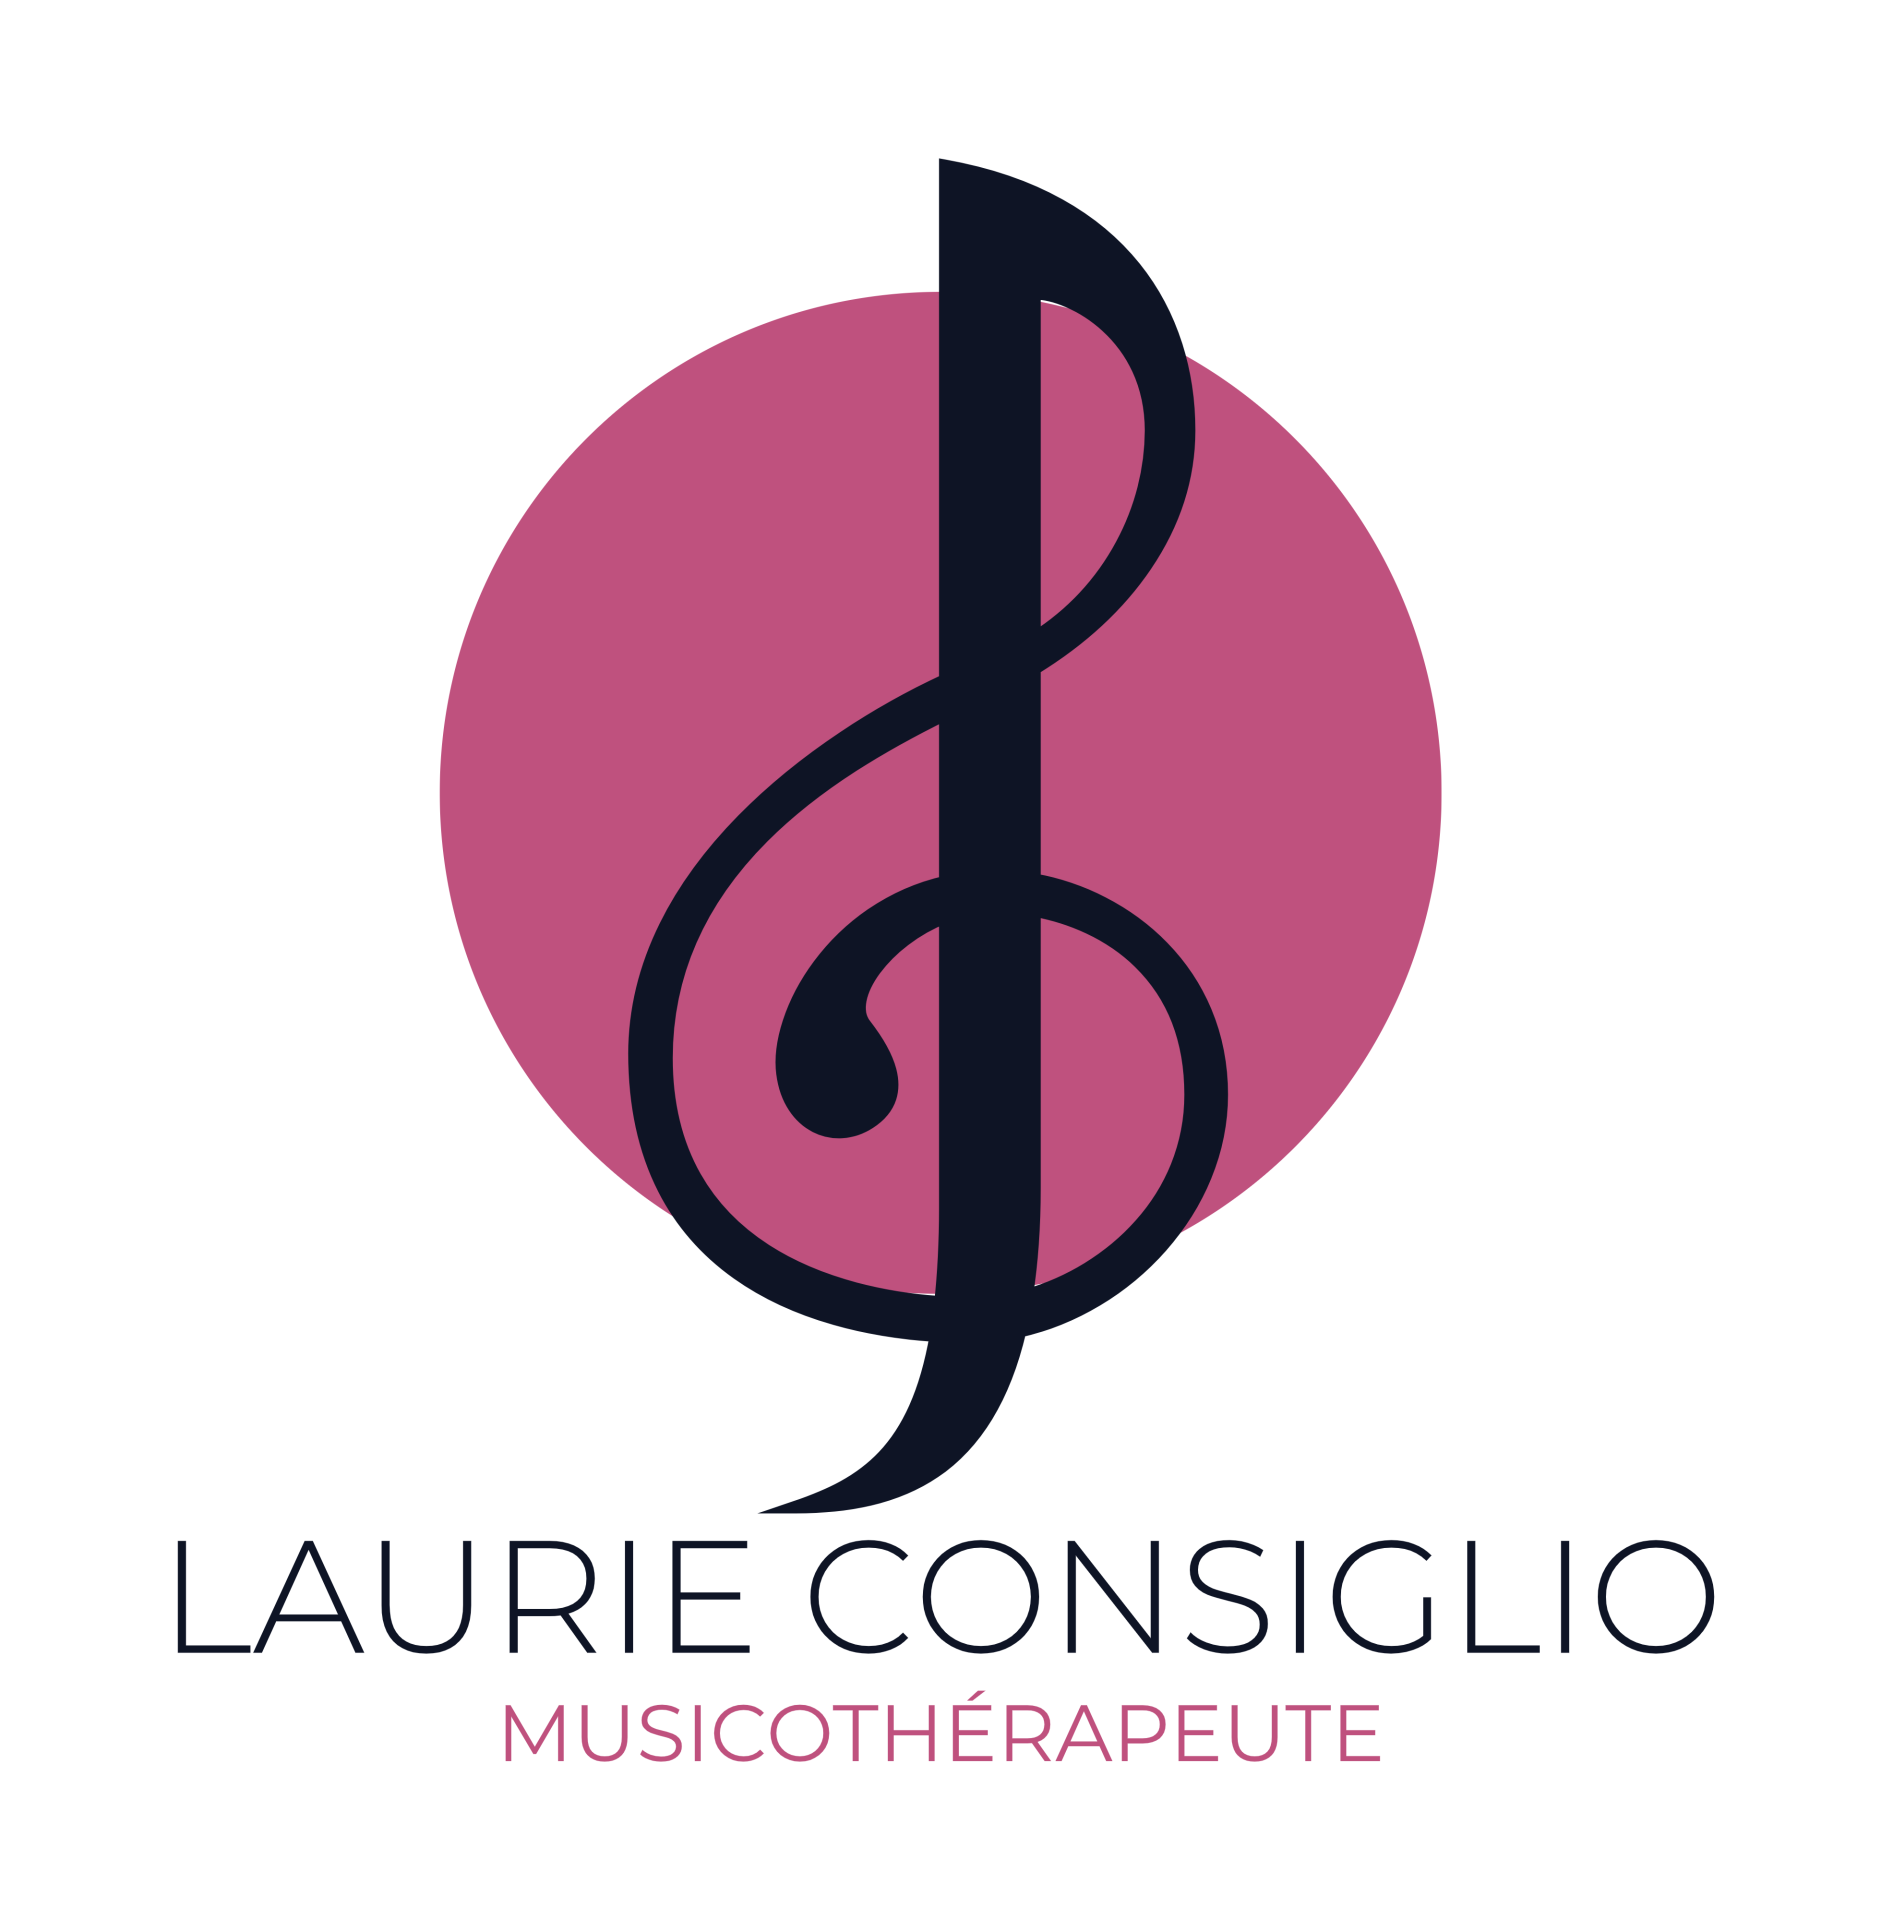 Laurie Consiglio Musicothérapeute